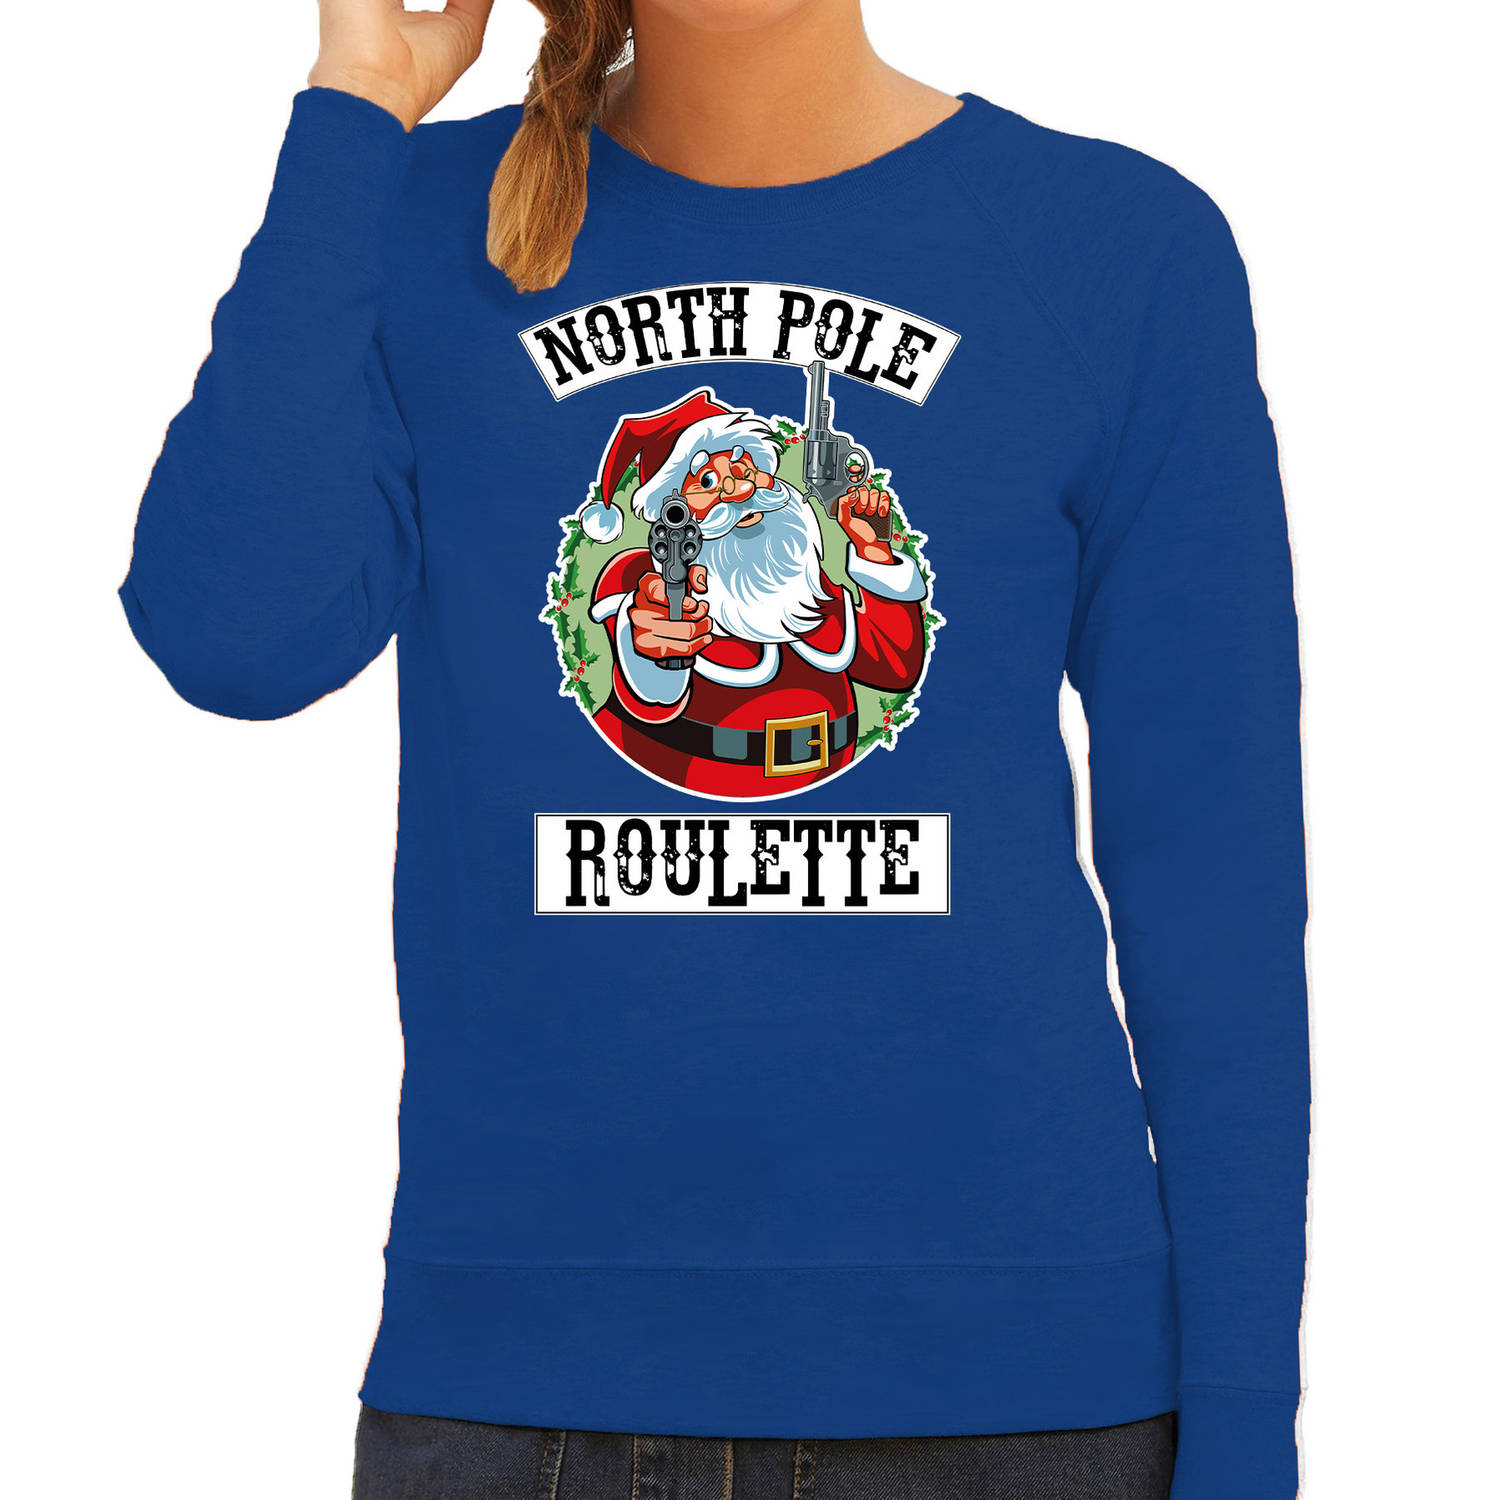 Blauwe Kersttrui / Kerstkleding Northpole roulette voor dames M - kerst truien